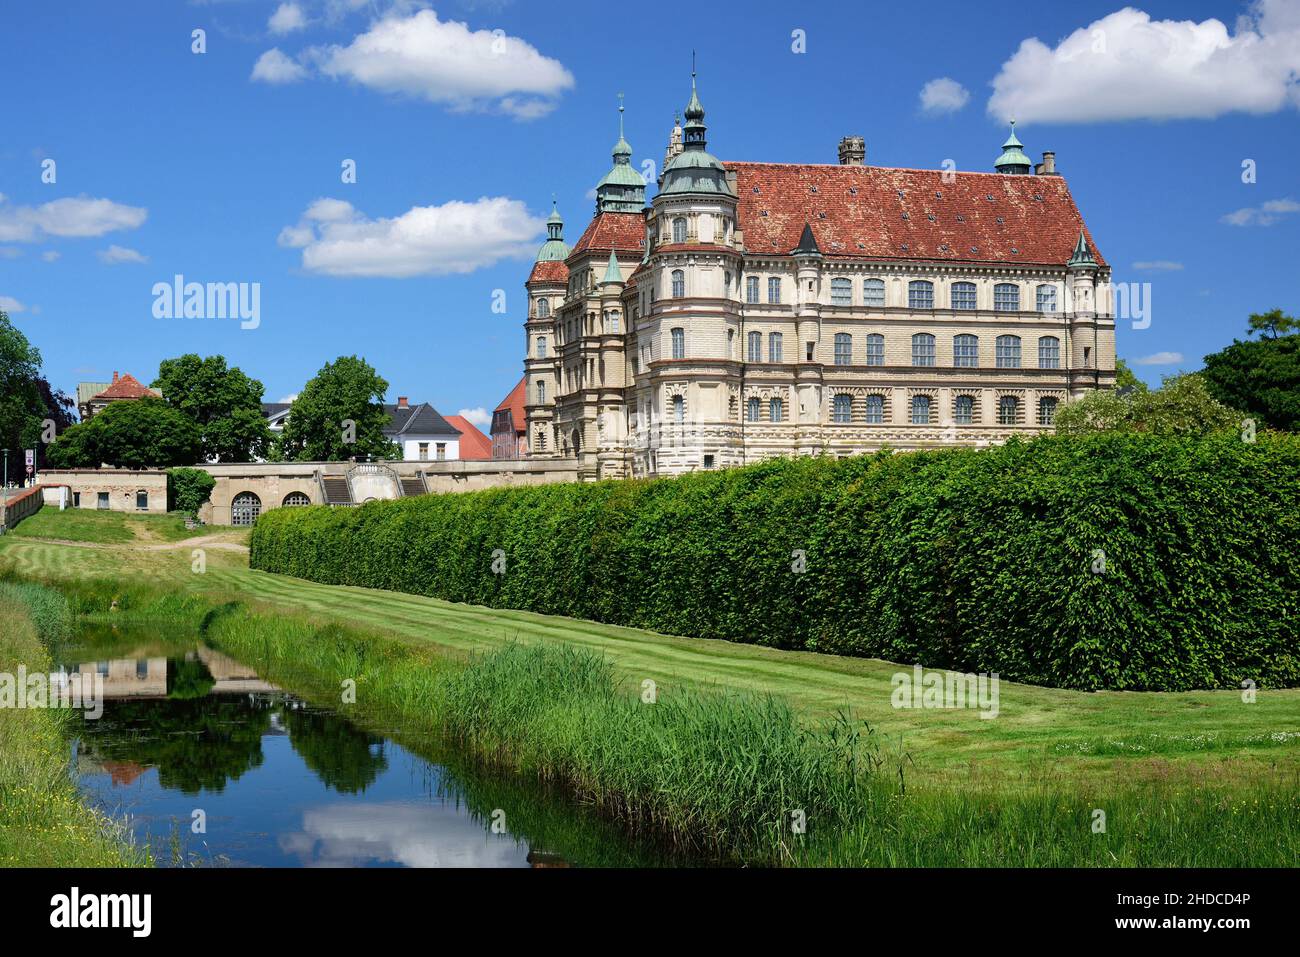 Europa, Deutschland, Mecklenburg-Vorpommern, Guestrow, Schloss Guestrow, erbaut 16. Jahrhundert, Renaissance Bauwerk, Seitenansicht, Stock Photo